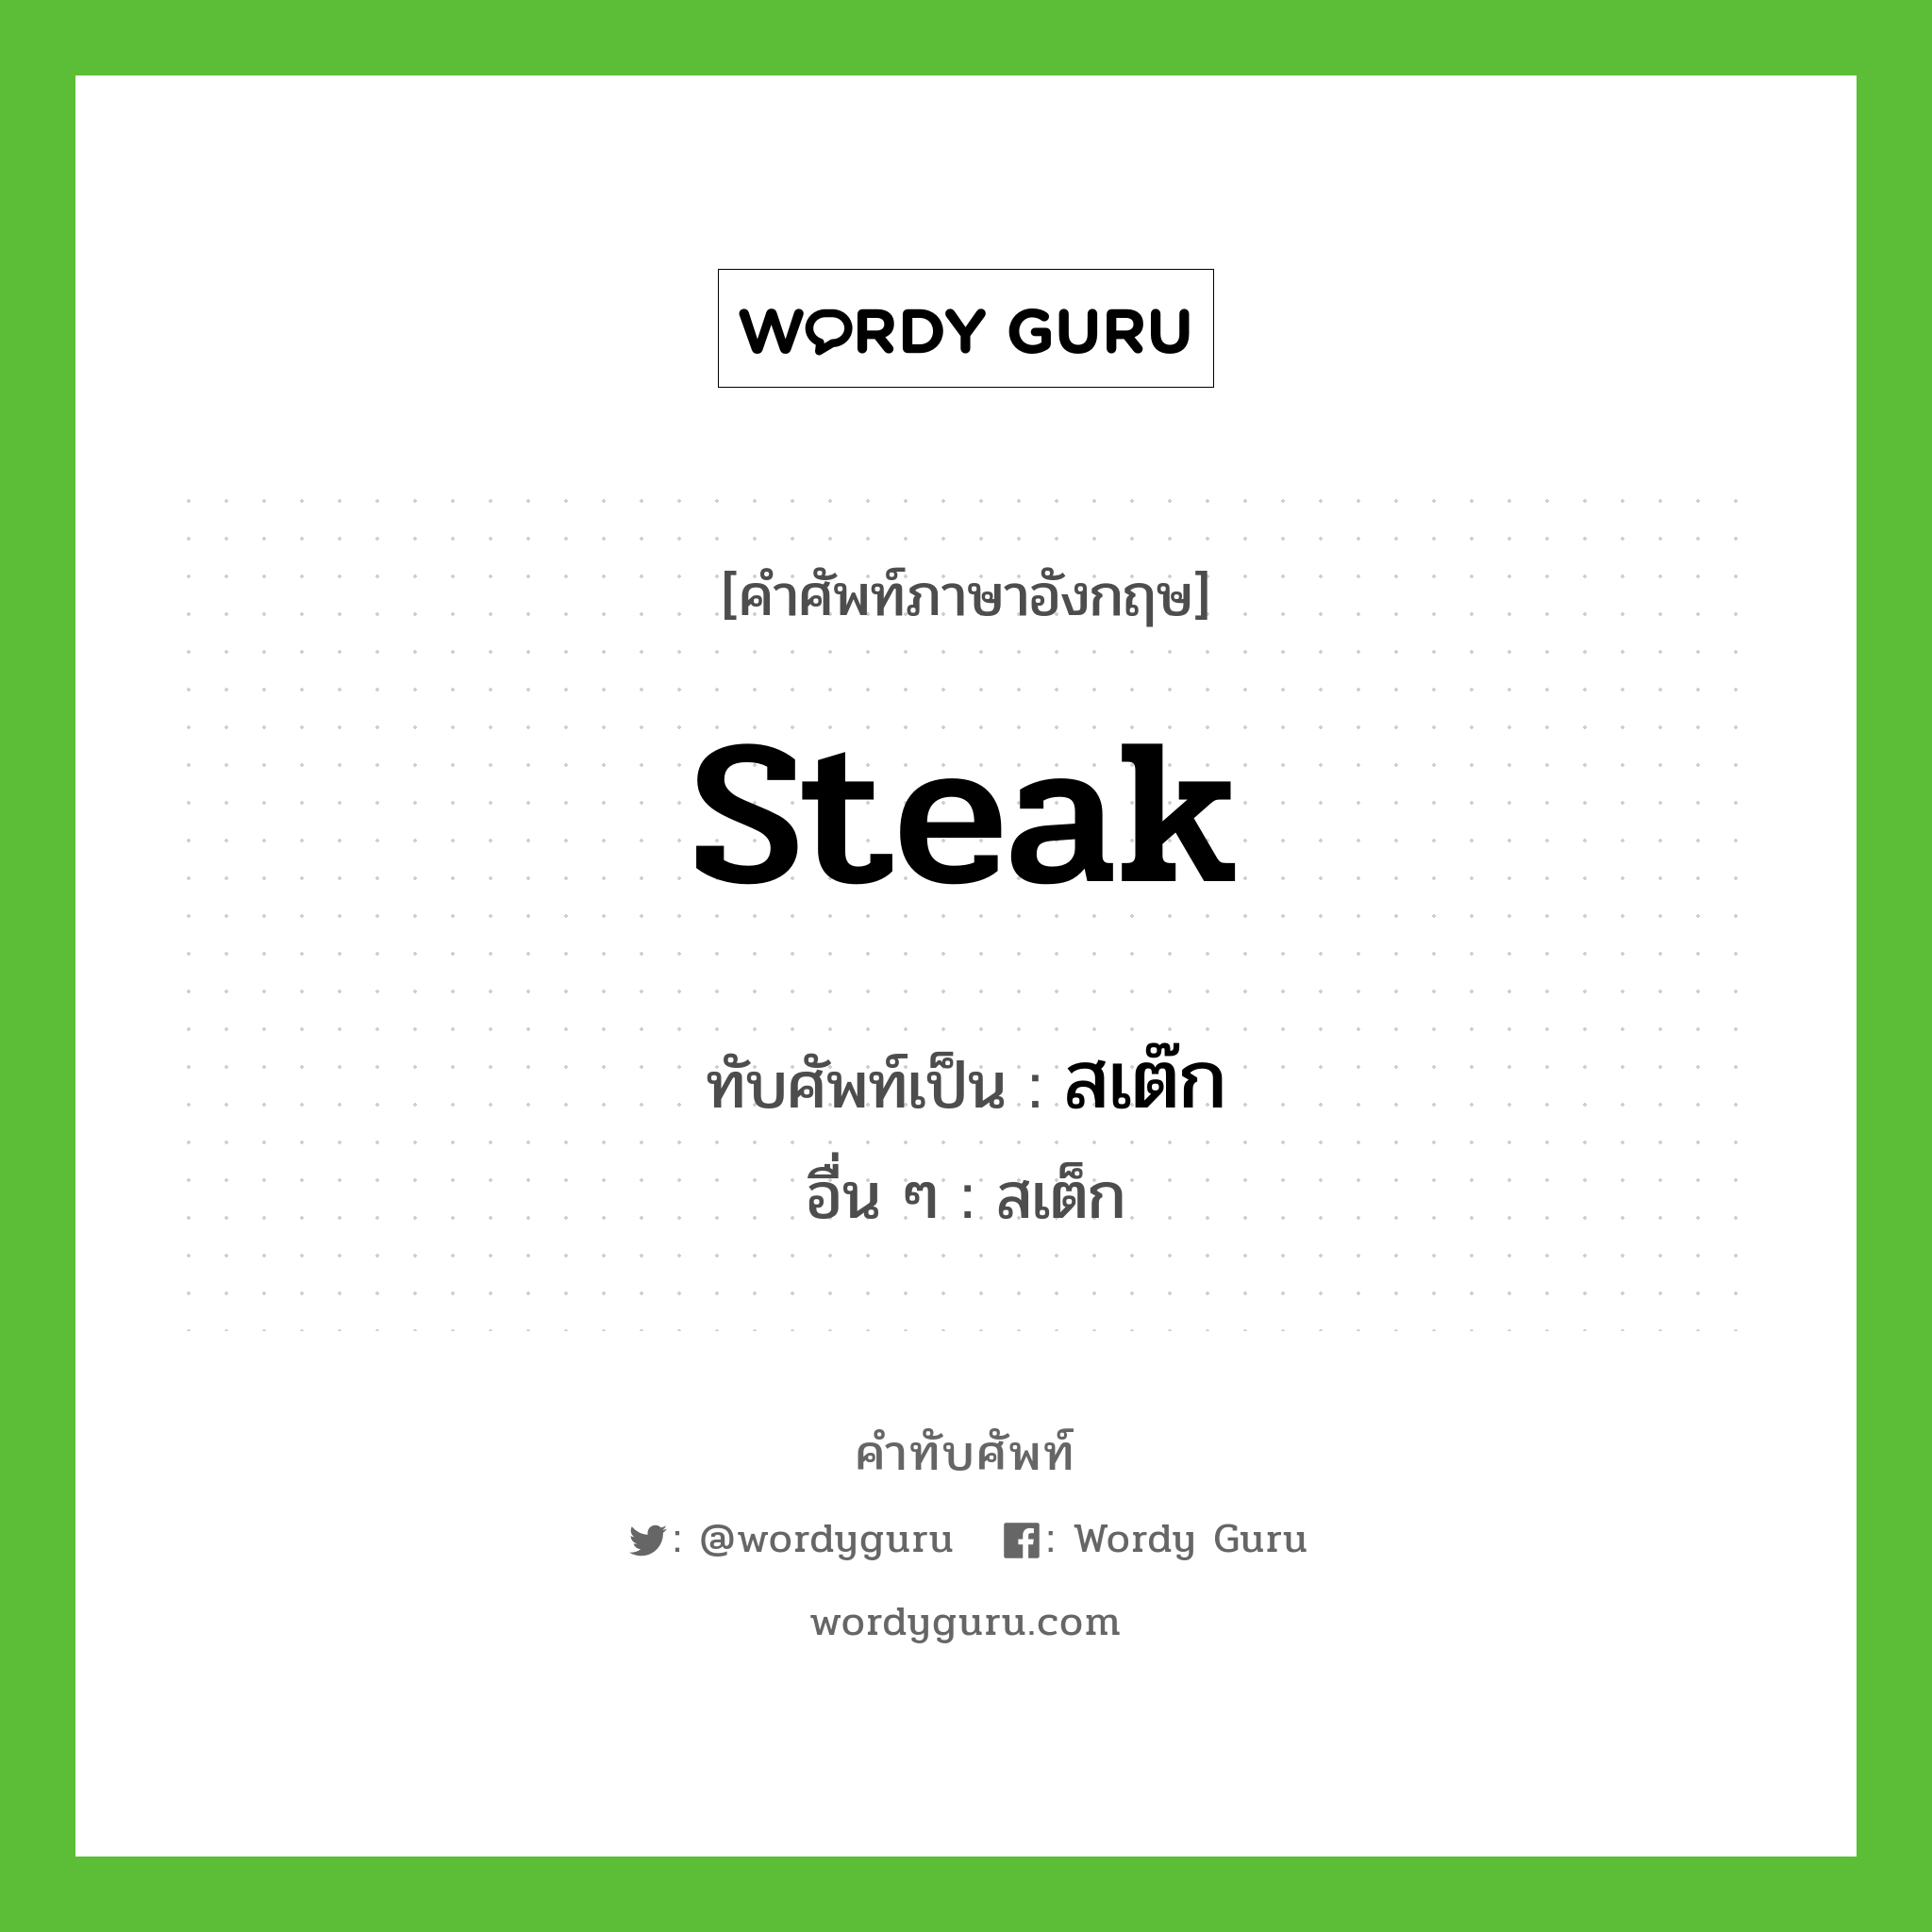 steak เขียนเป็นคำไทยว่าอะไร?, คำศัพท์ภาษาอังกฤษ steak ทับศัพท์เป็น สเต๊ก อื่น ๆ สเต็ก